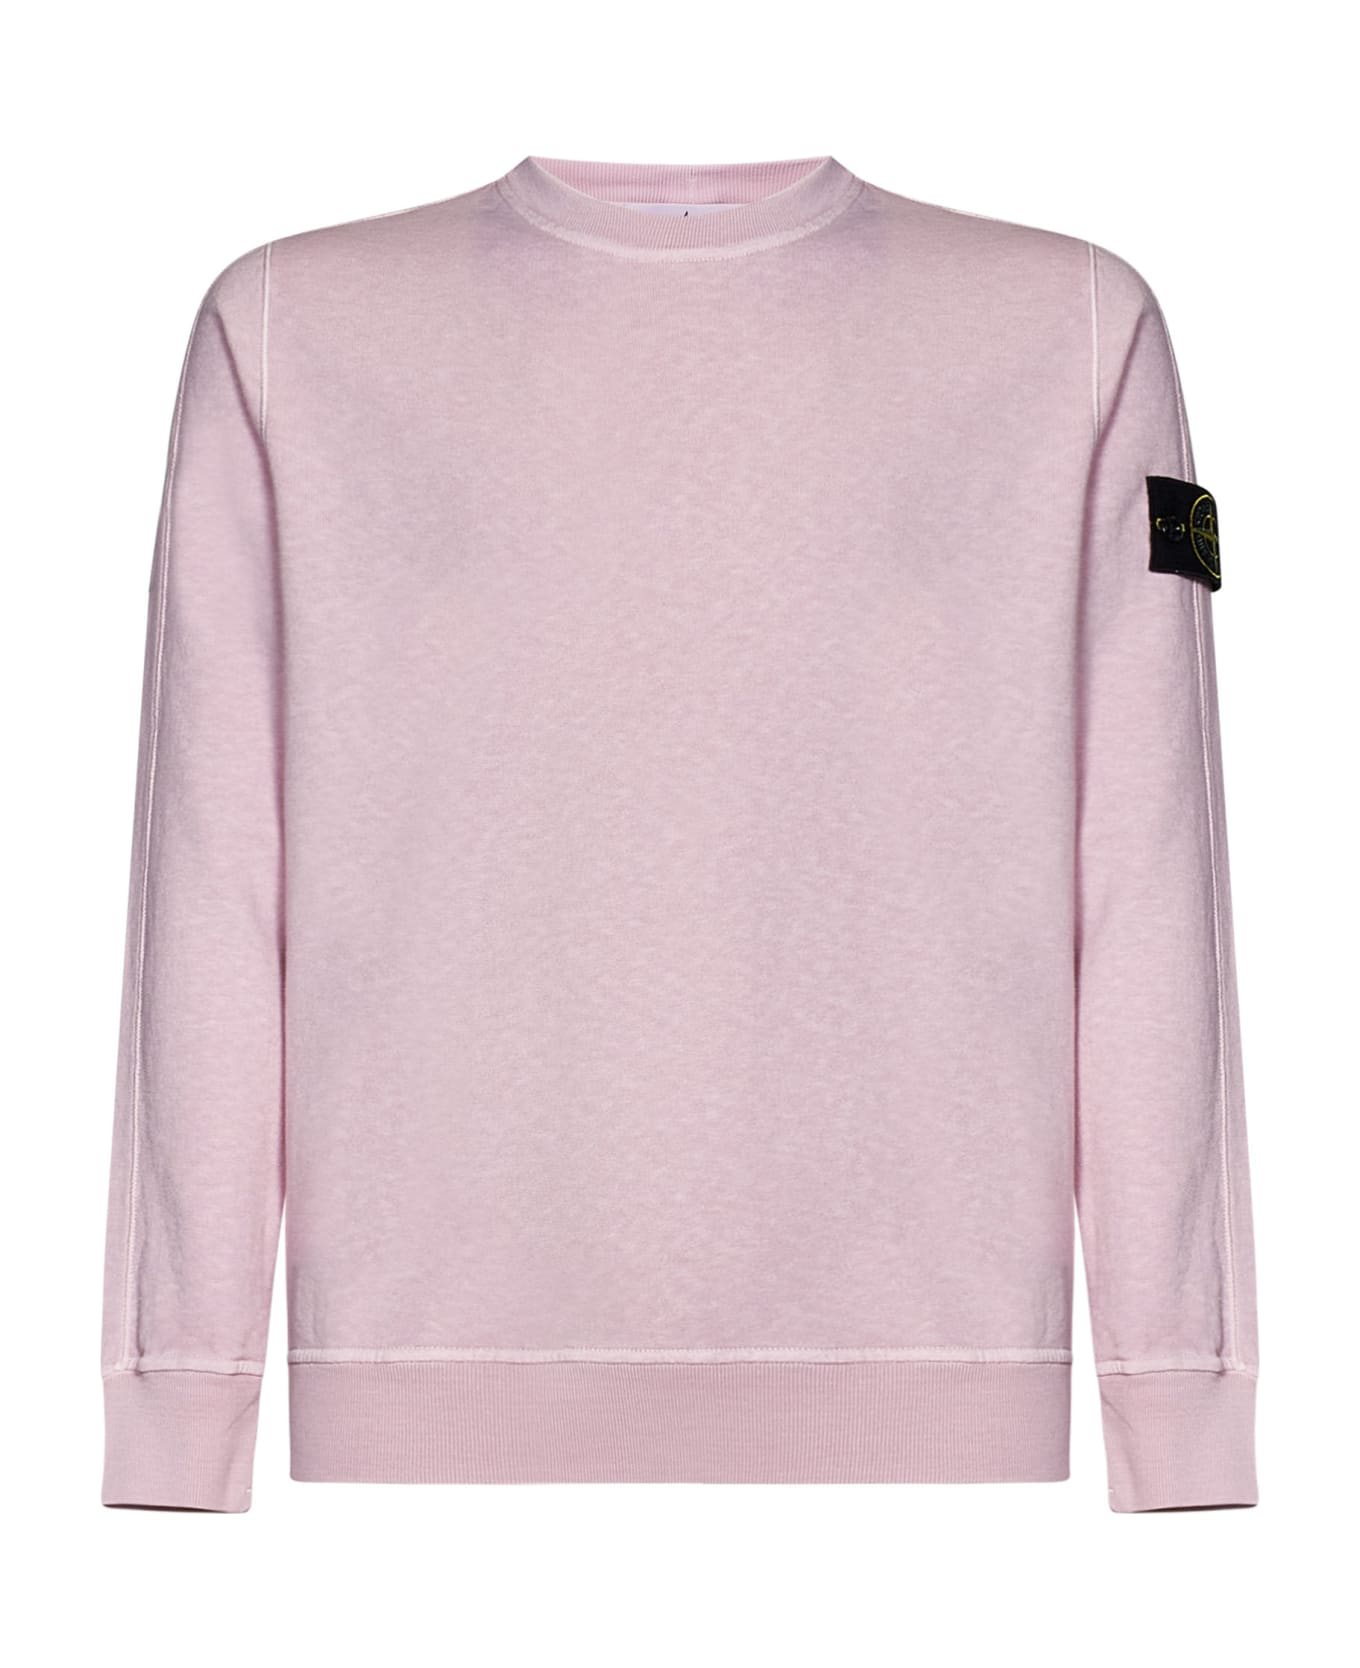 Stone Island Sweatshirt - Pink